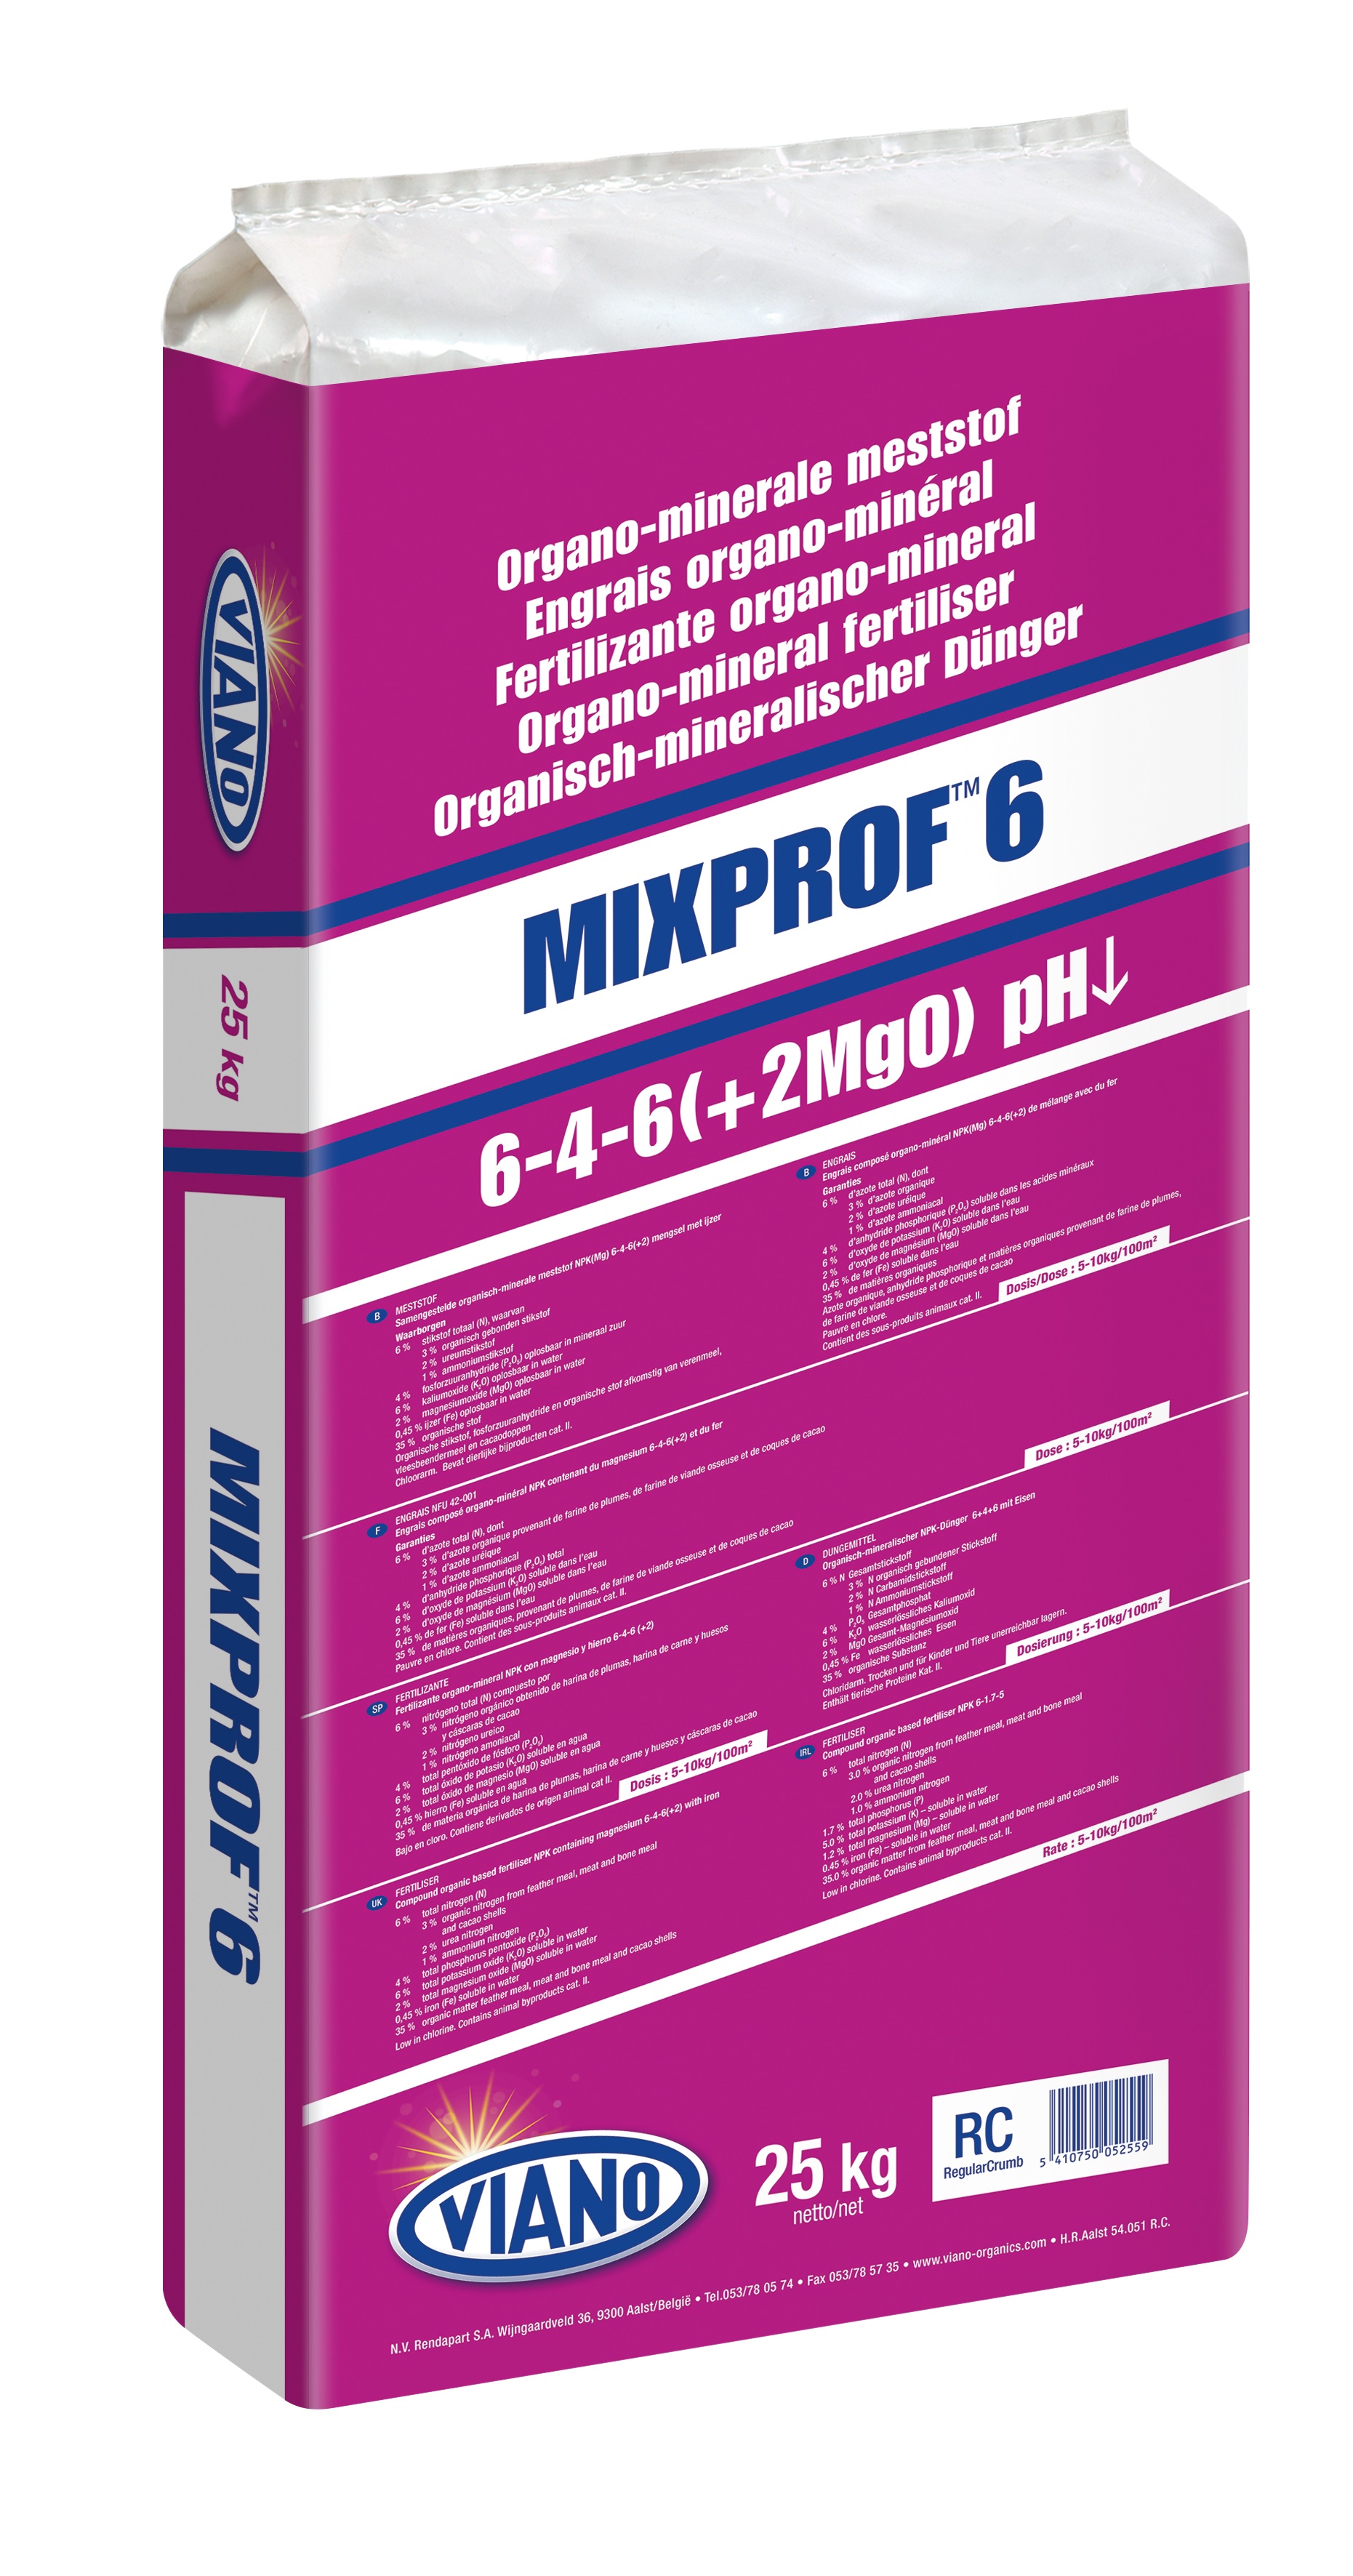 Viano Mixprof 6 pH low szerves trágya savanyú talajt kedvelőknek 25 kg